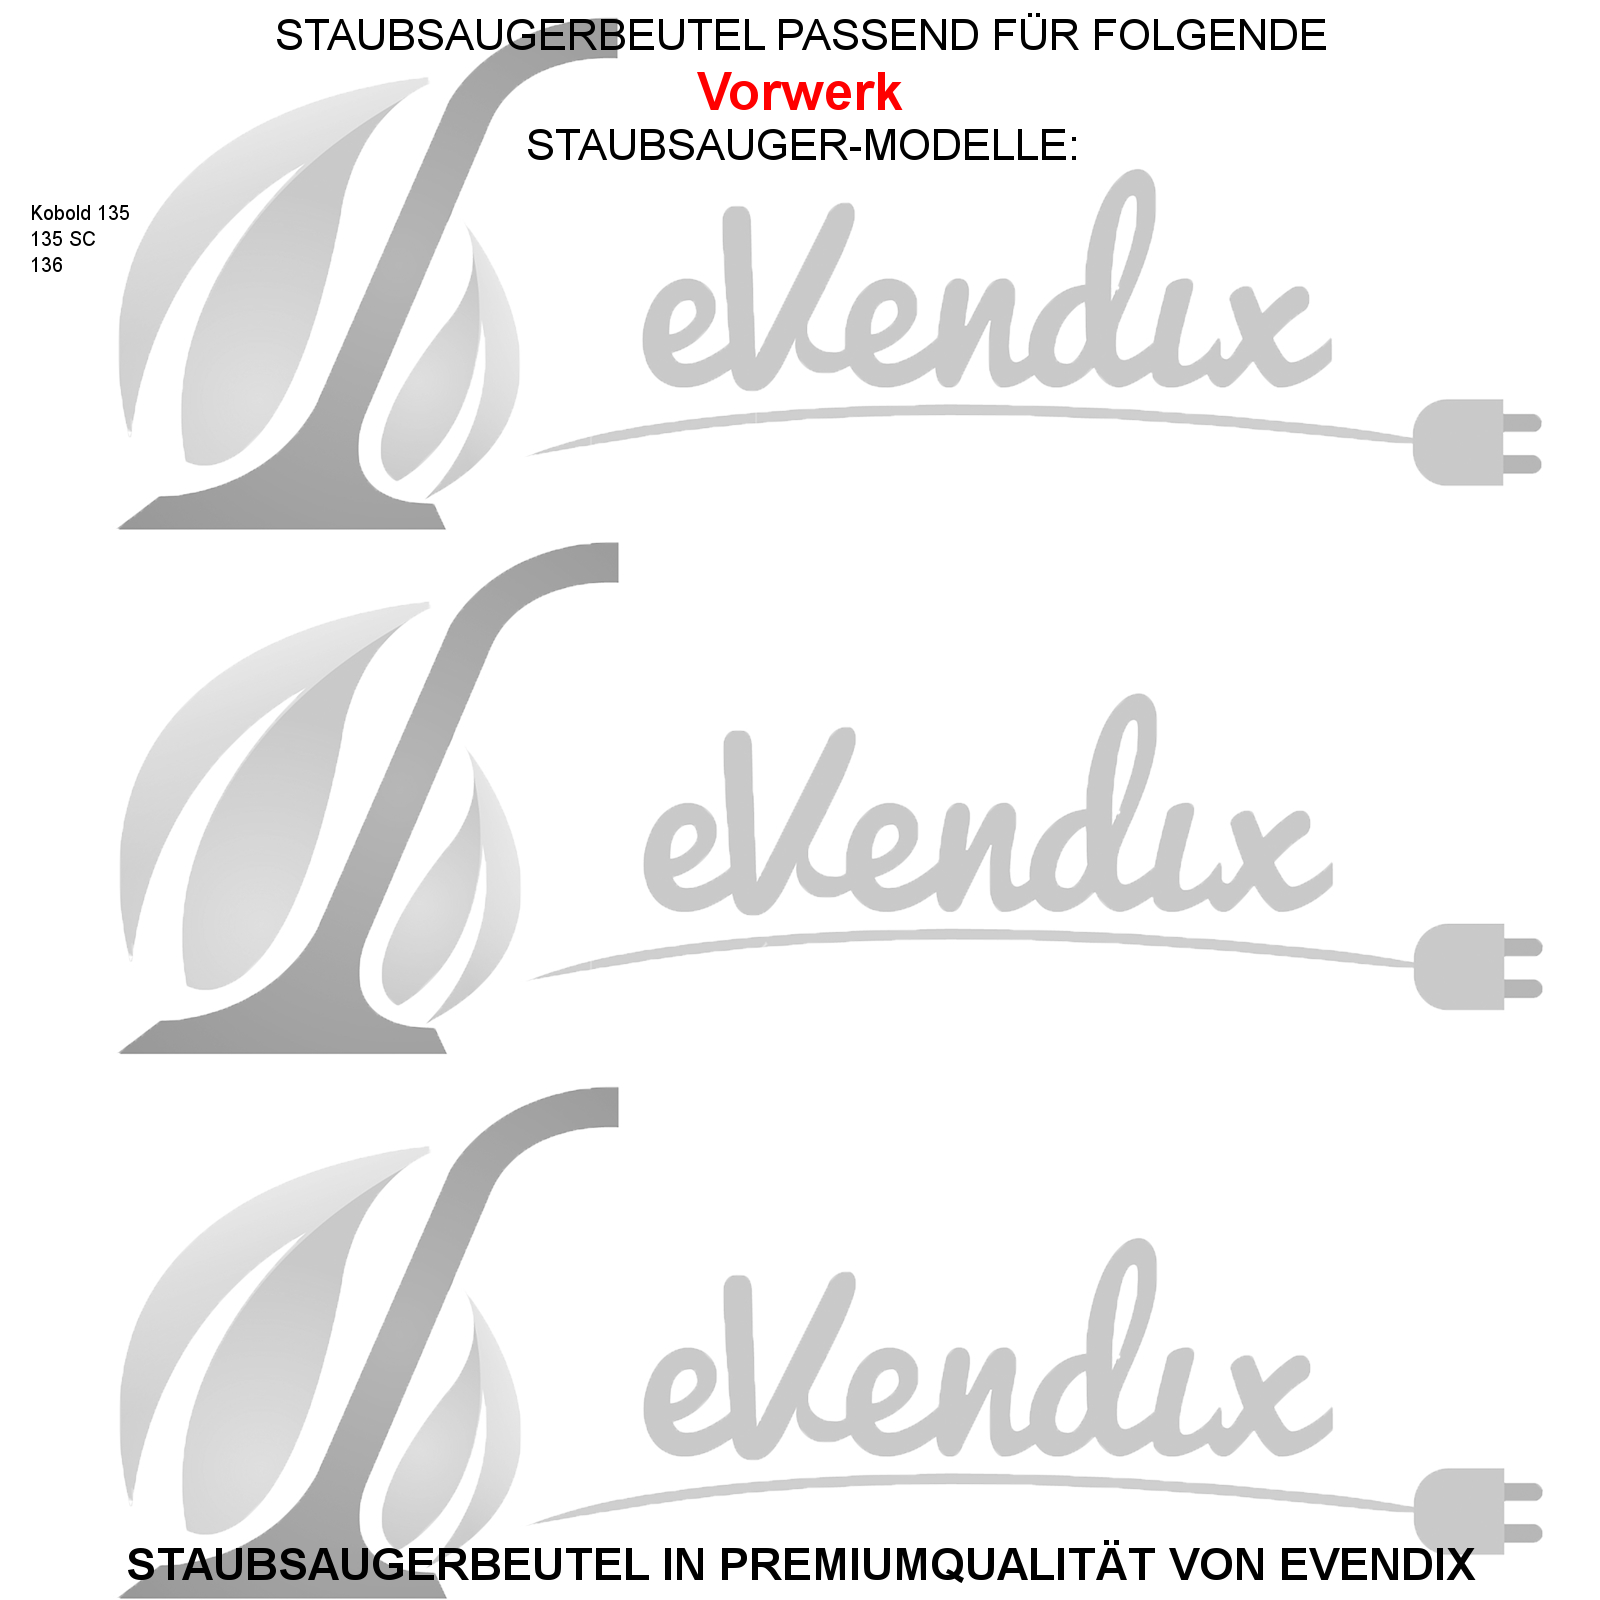 6 Staubsaugerbeutel / Staubbeutel / Filtertüten kompatibel mit Vorwerk Kobold VK 135, 135 SC, 136 ähnlich FP135, FP136